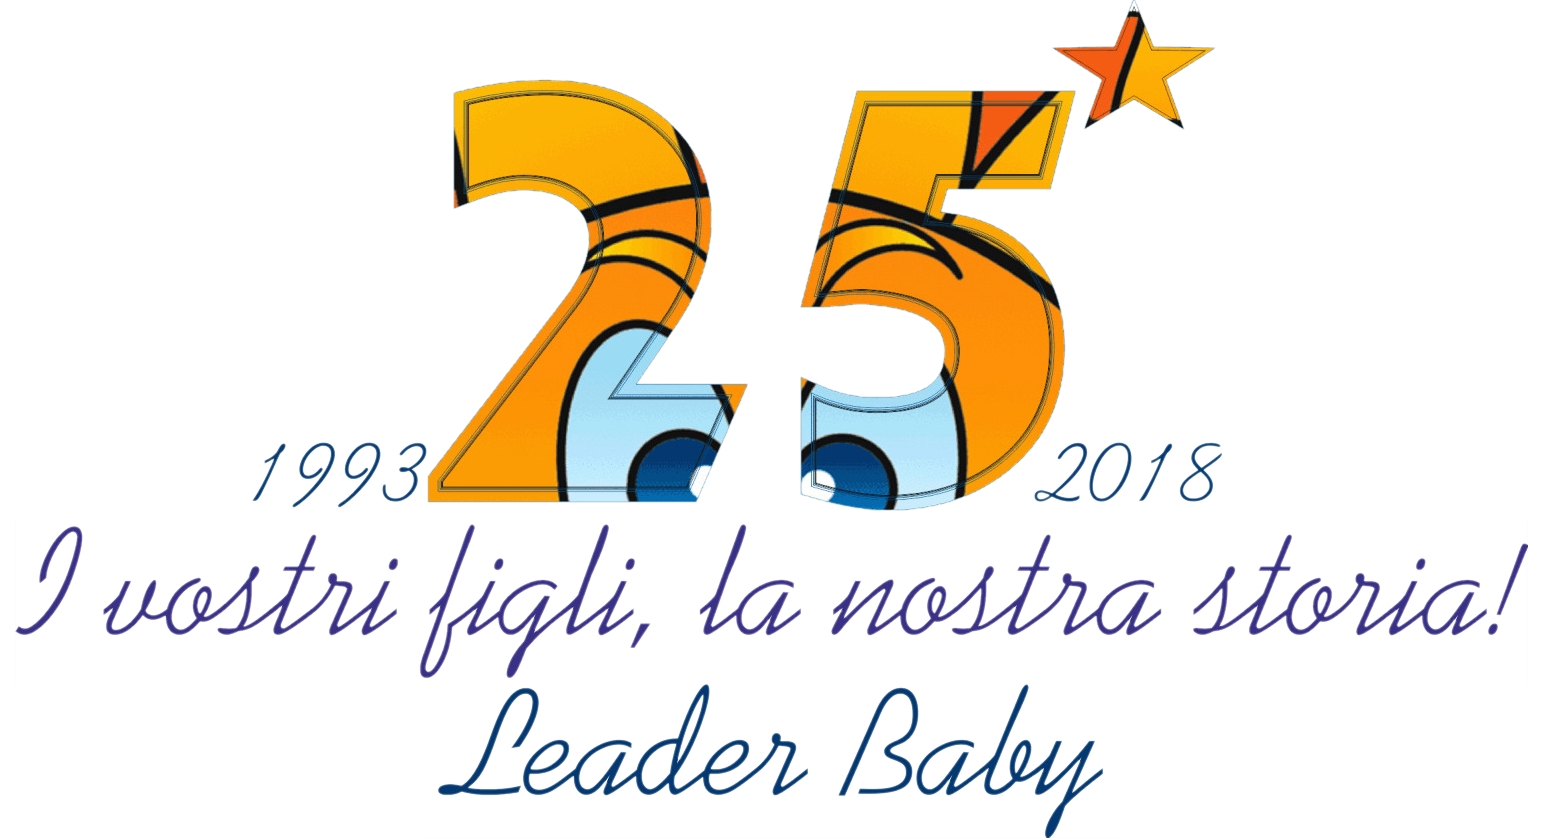 venticinquesimo anniversario dell'apertura della scuola Leader Baby - Logo